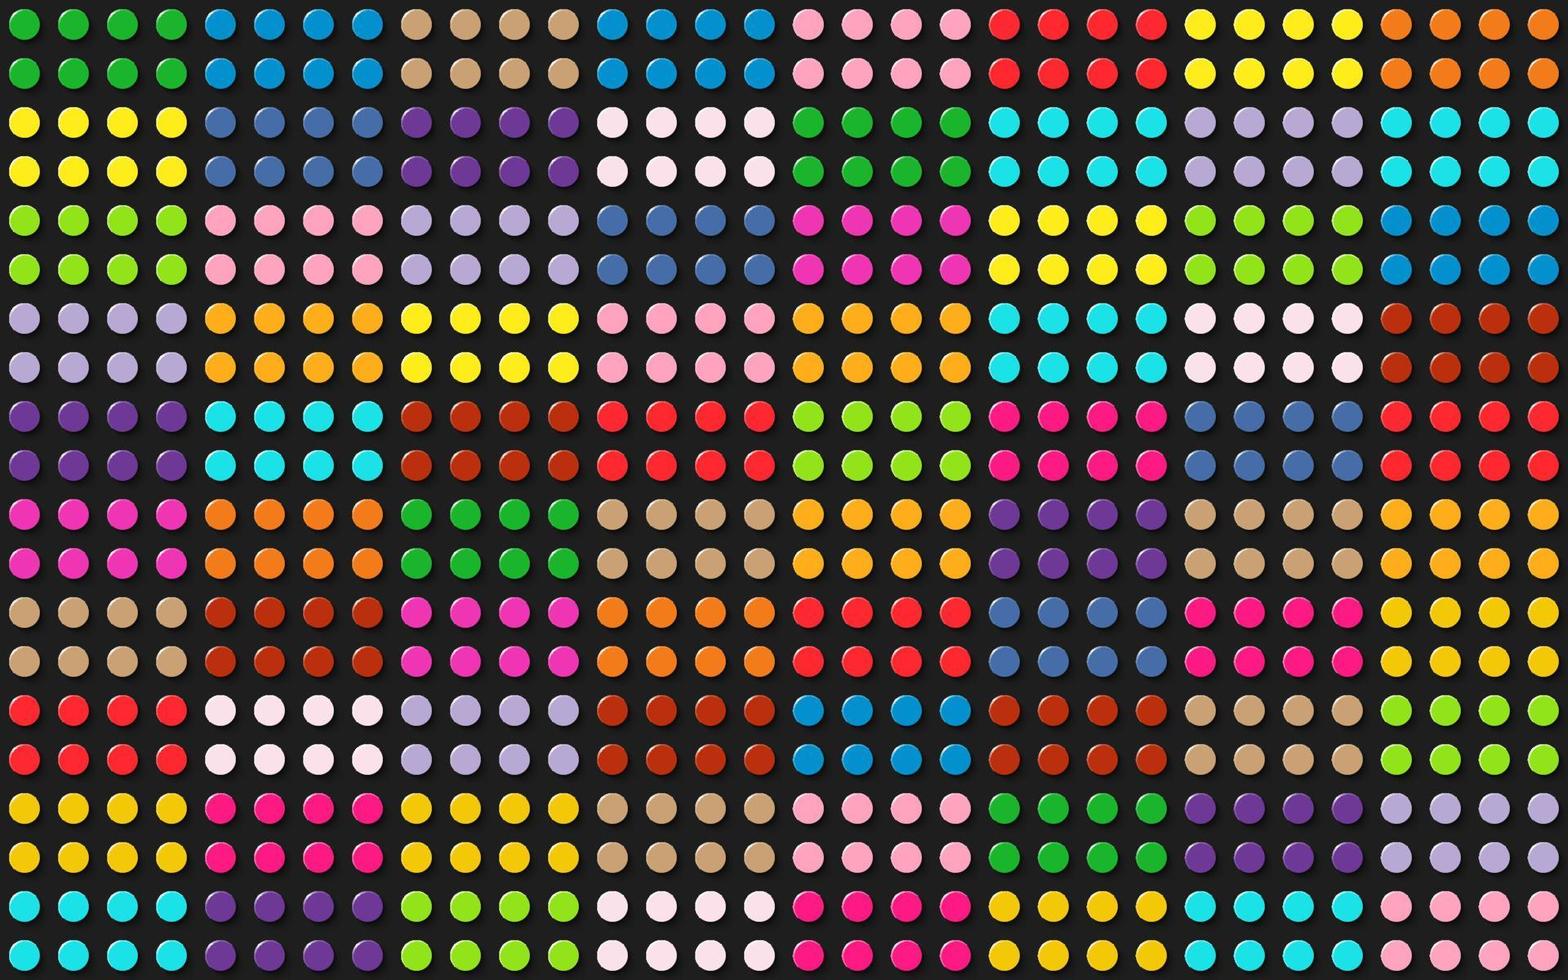 fond de points colorés. points colorés regroupés comme des blocs de lego. motif vectoriel continu ou fond de texture